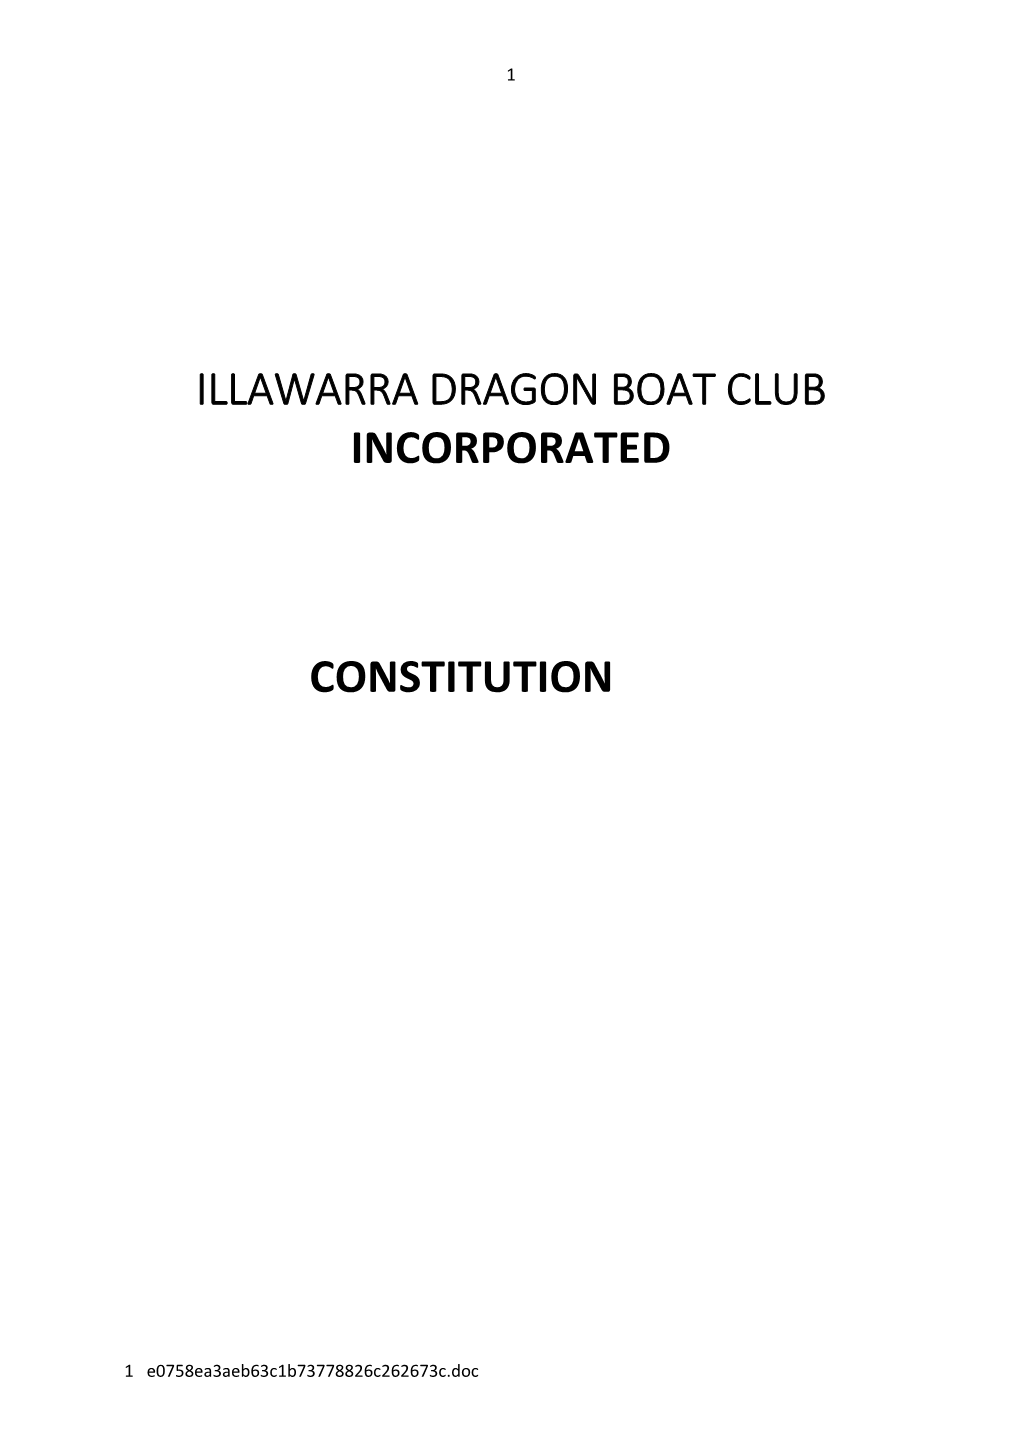 Illawarra Dragon Boat Club